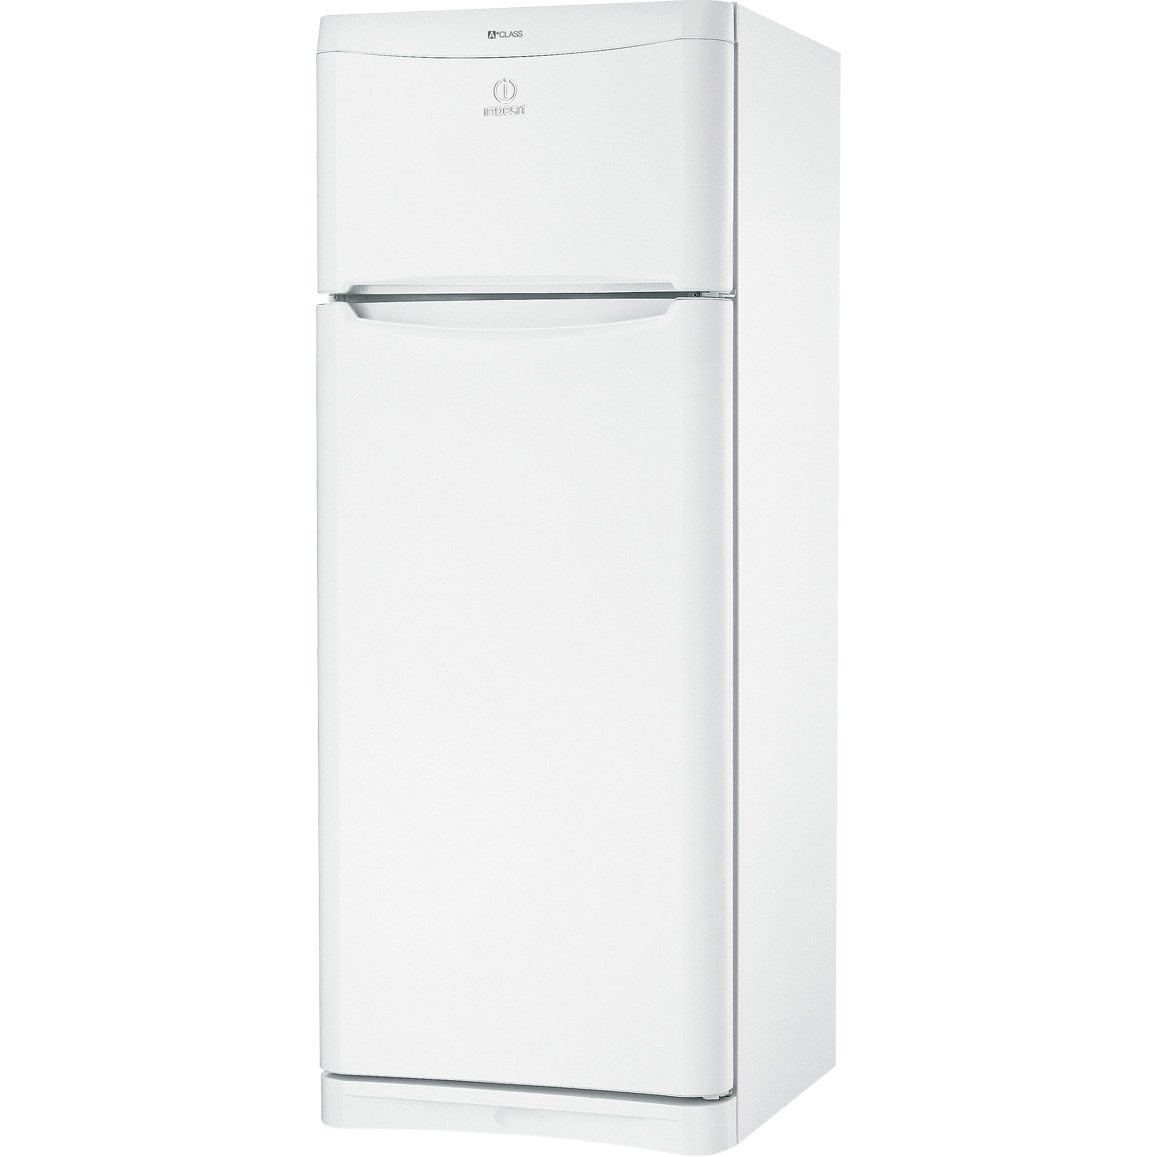 Хладилник Indesit TAA5 с обем от 415 л.